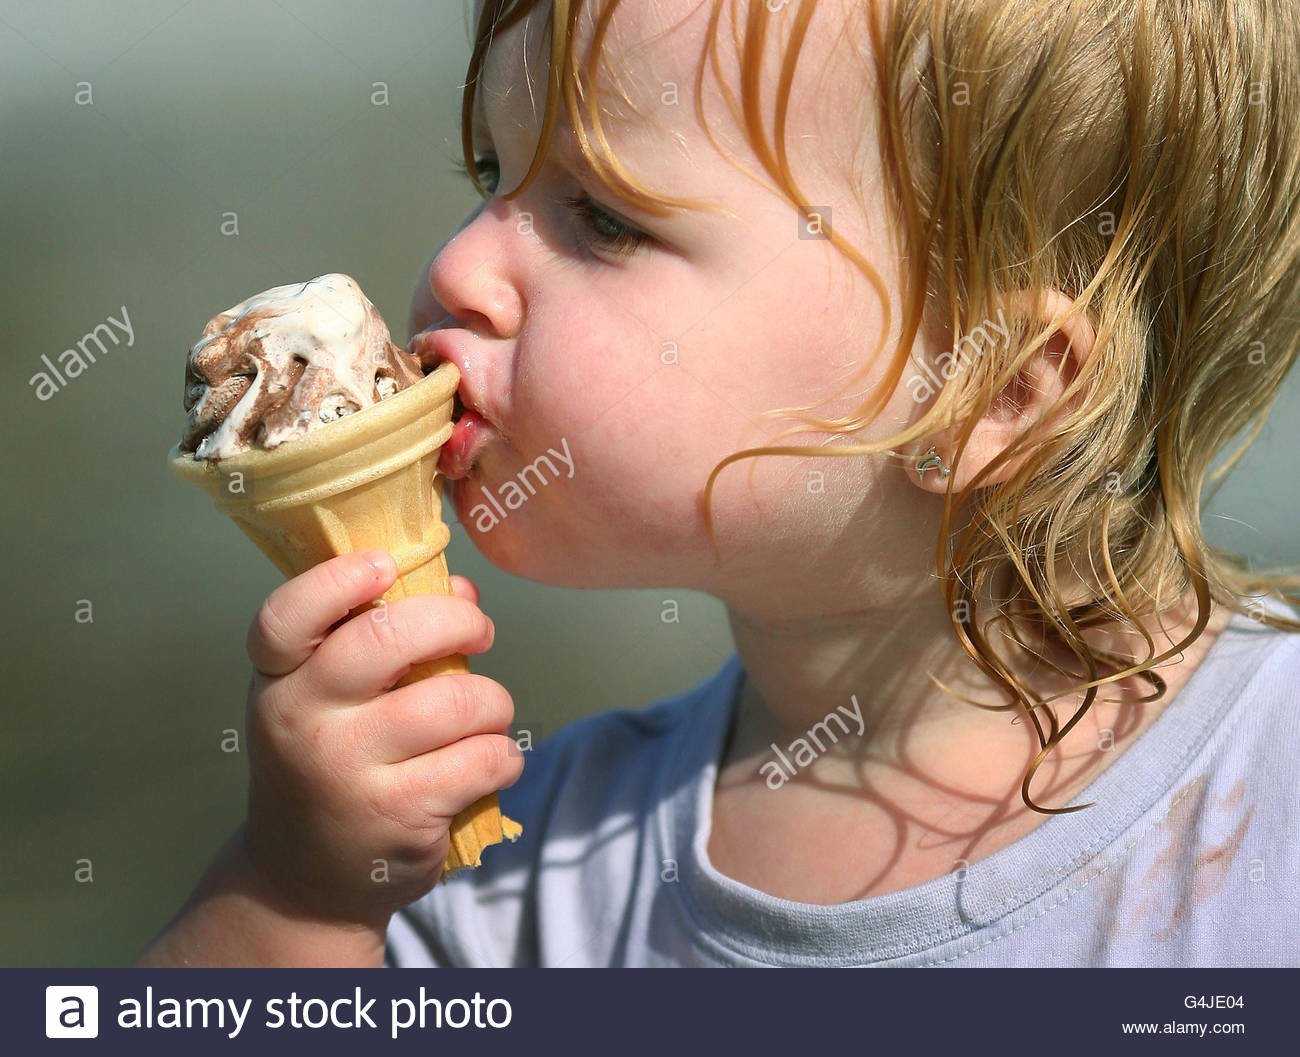 Вкусно ест мороженое. Человек ест мороженое. Дети едят мороженое. Кушать мороженое. Девочка с мороженым.